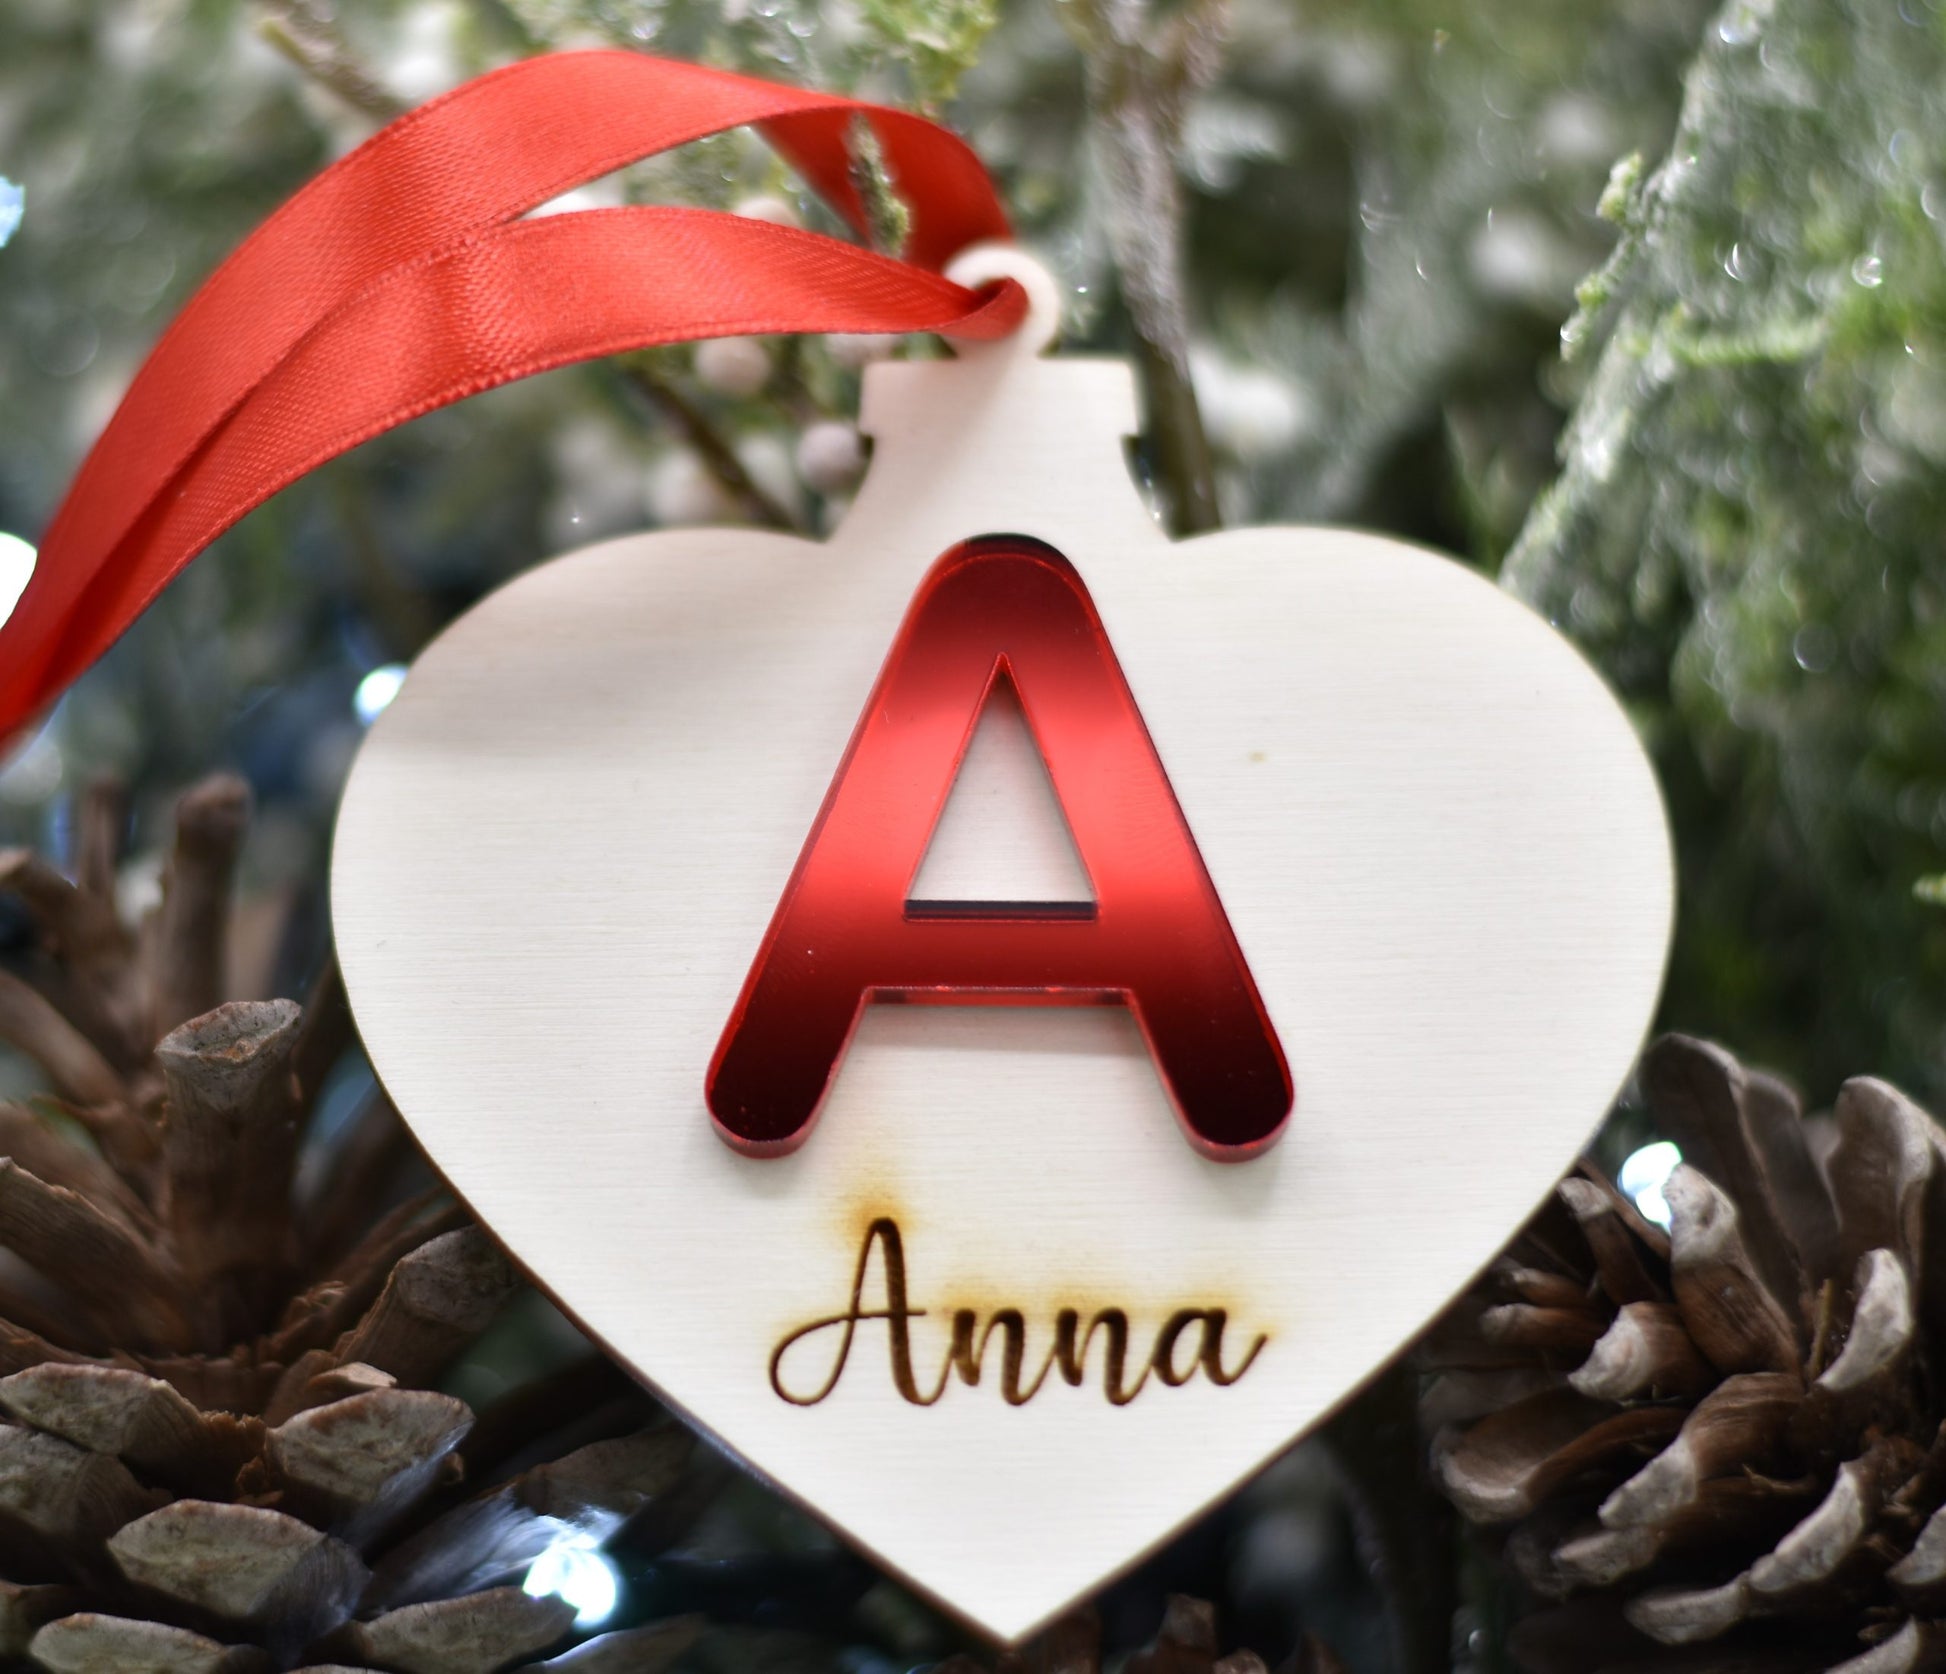 Pallina Cuore con iniziale in plex specchio e nome per addobbi natalizi personalizzati regalo di NATALE Idea's Cottage